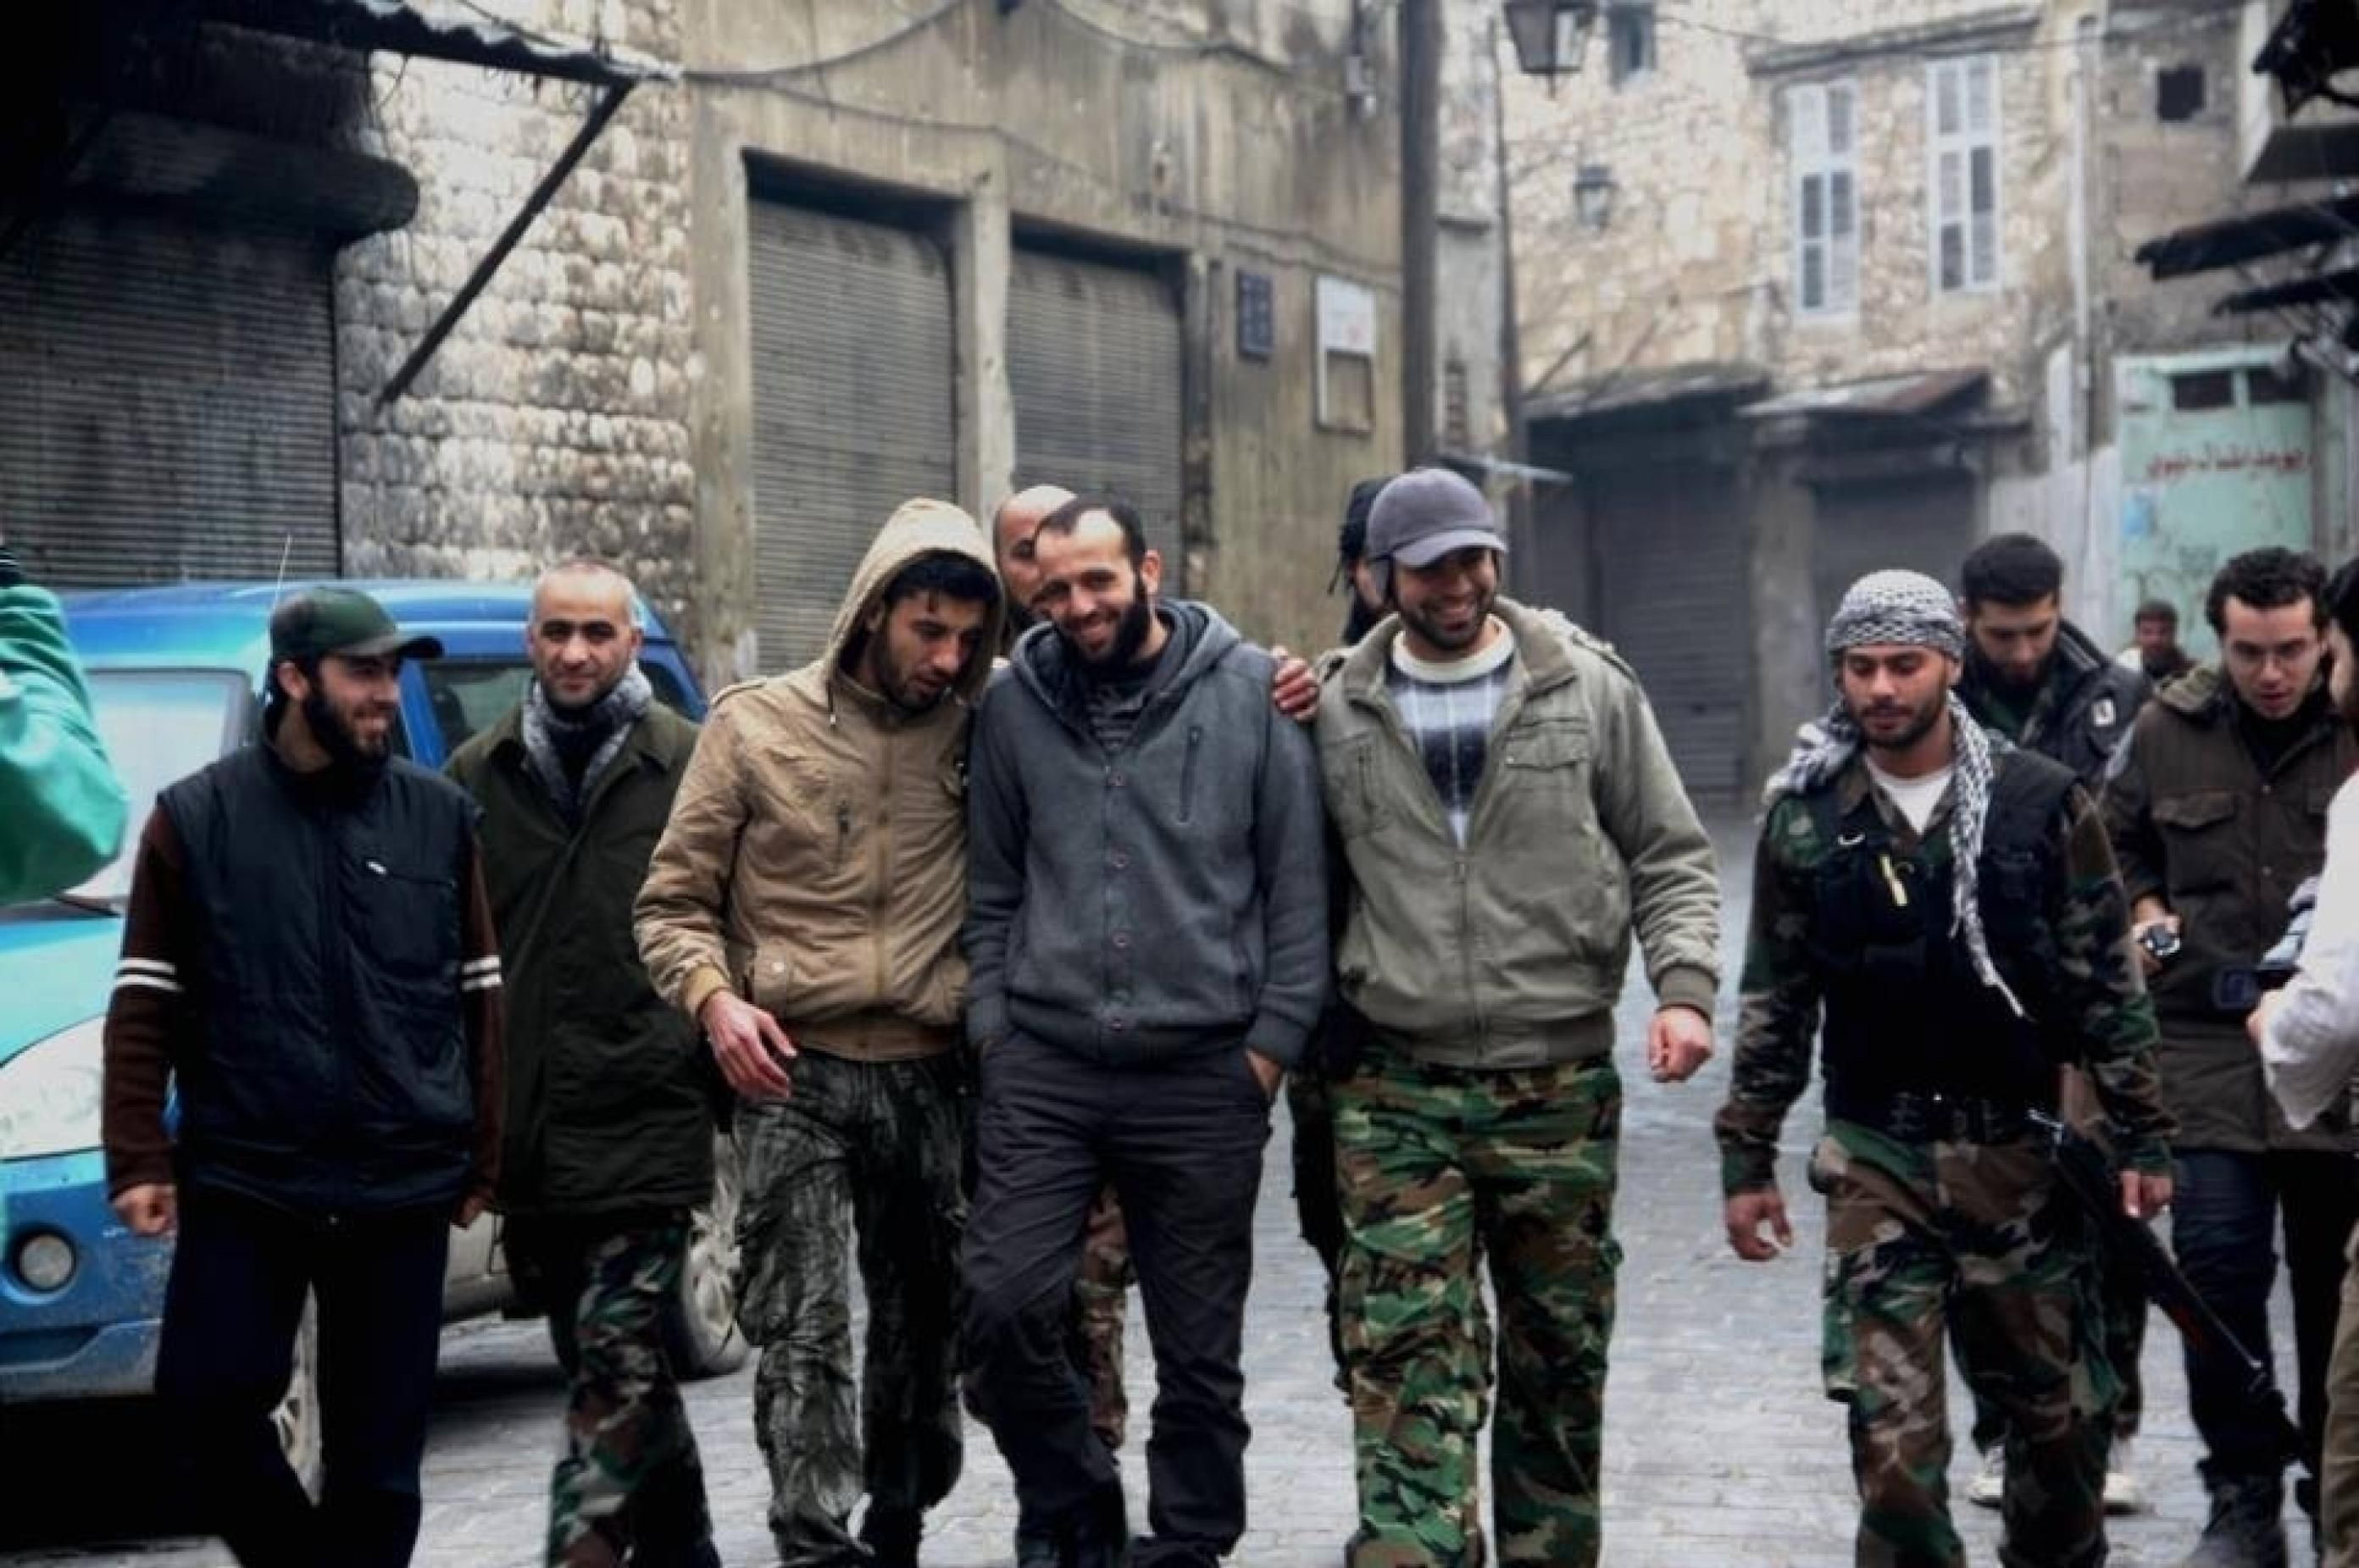 Suriye'de barışçıl gösterilere saldıran rejime karşı silaha ilk sarılan ve organize olmaya başlayan ilk kişilerden biri de Abdulkadir Salih'ti.